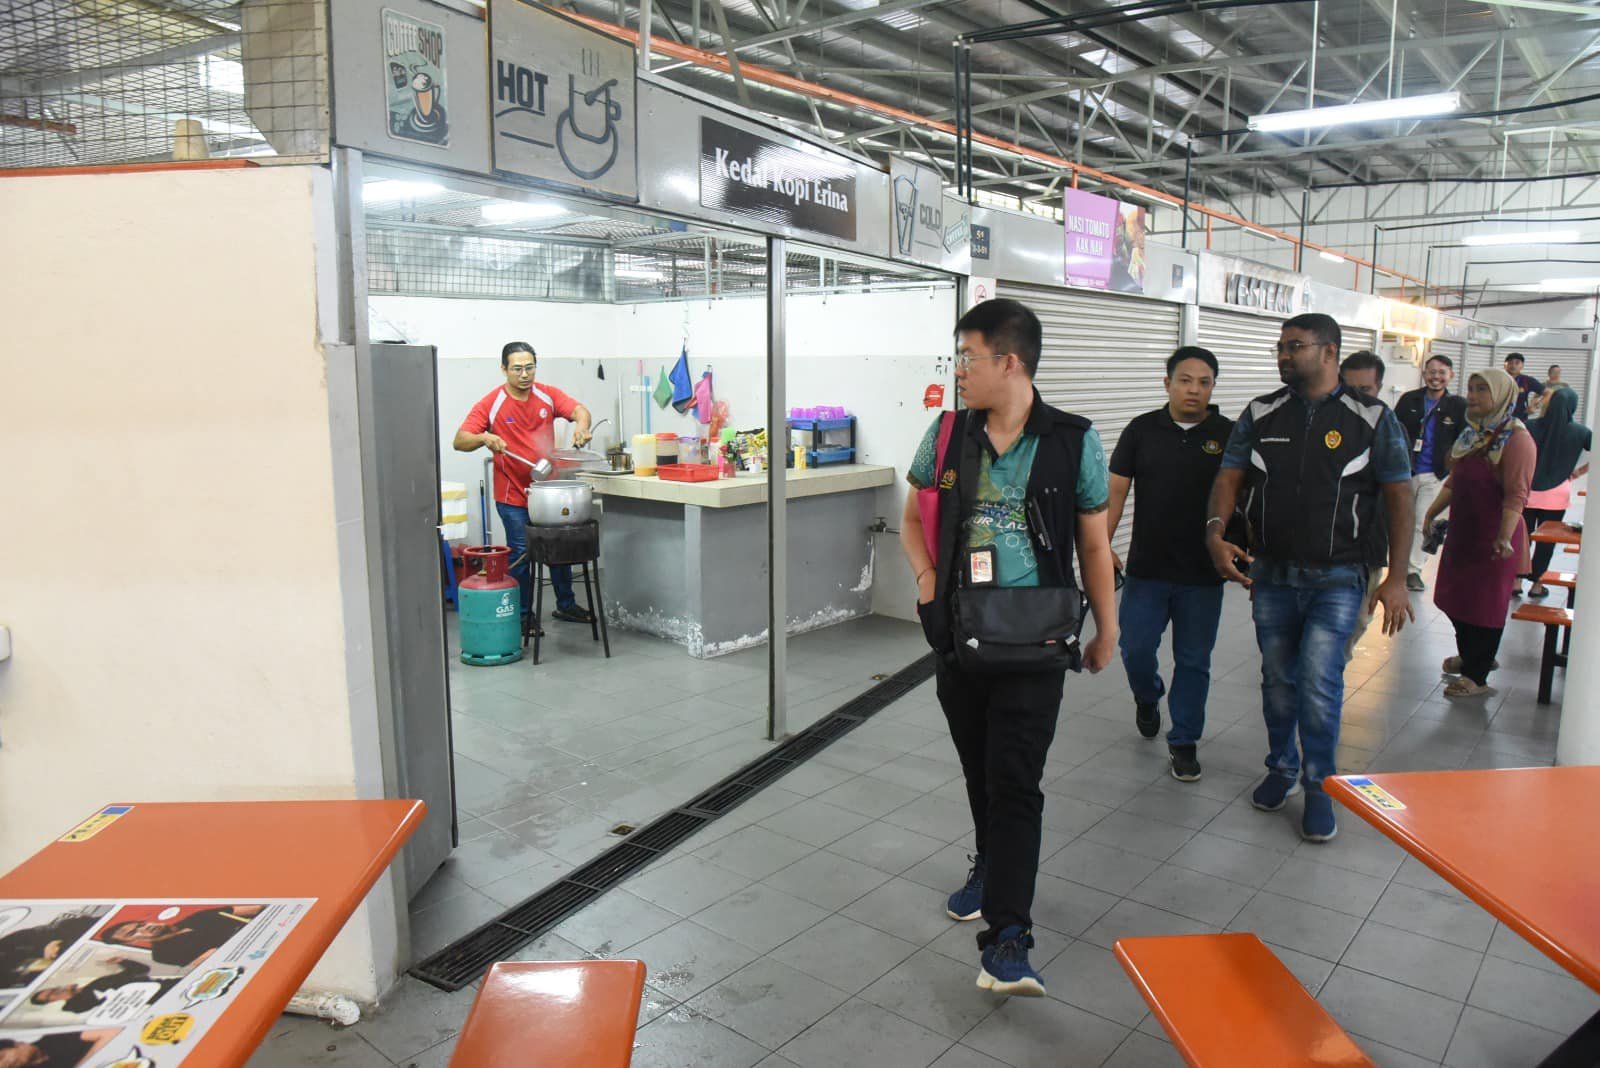 槟岛市政厅官员多次劝告食客别在小贩中心抽烟，然而被视为耳边风，因此市政厅联合卫生局展开对付行动。